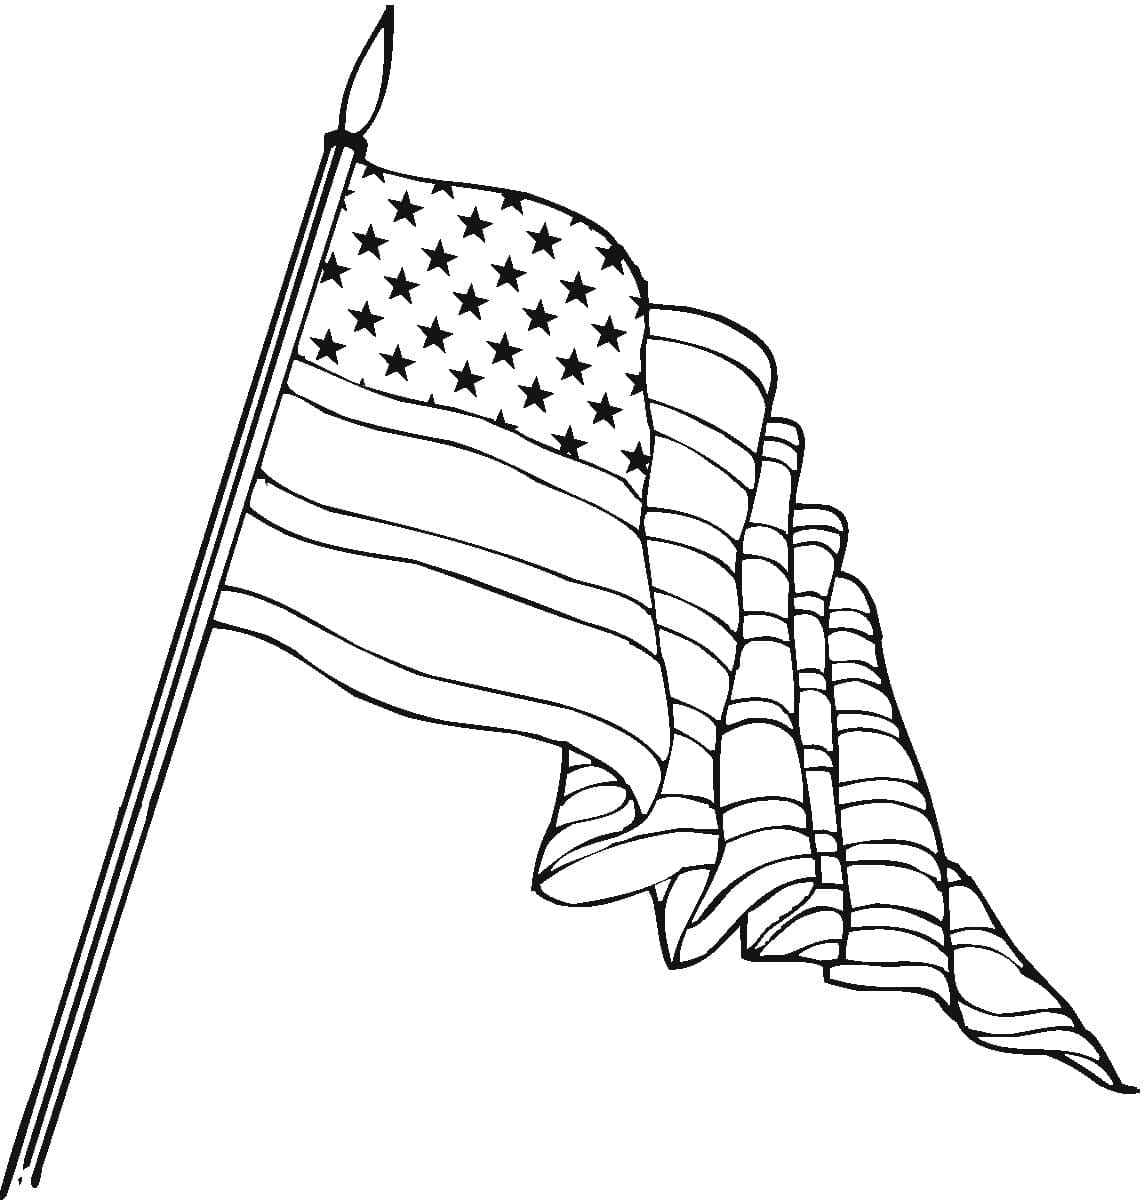 Coloriage Image du Drapeau des États-Unis